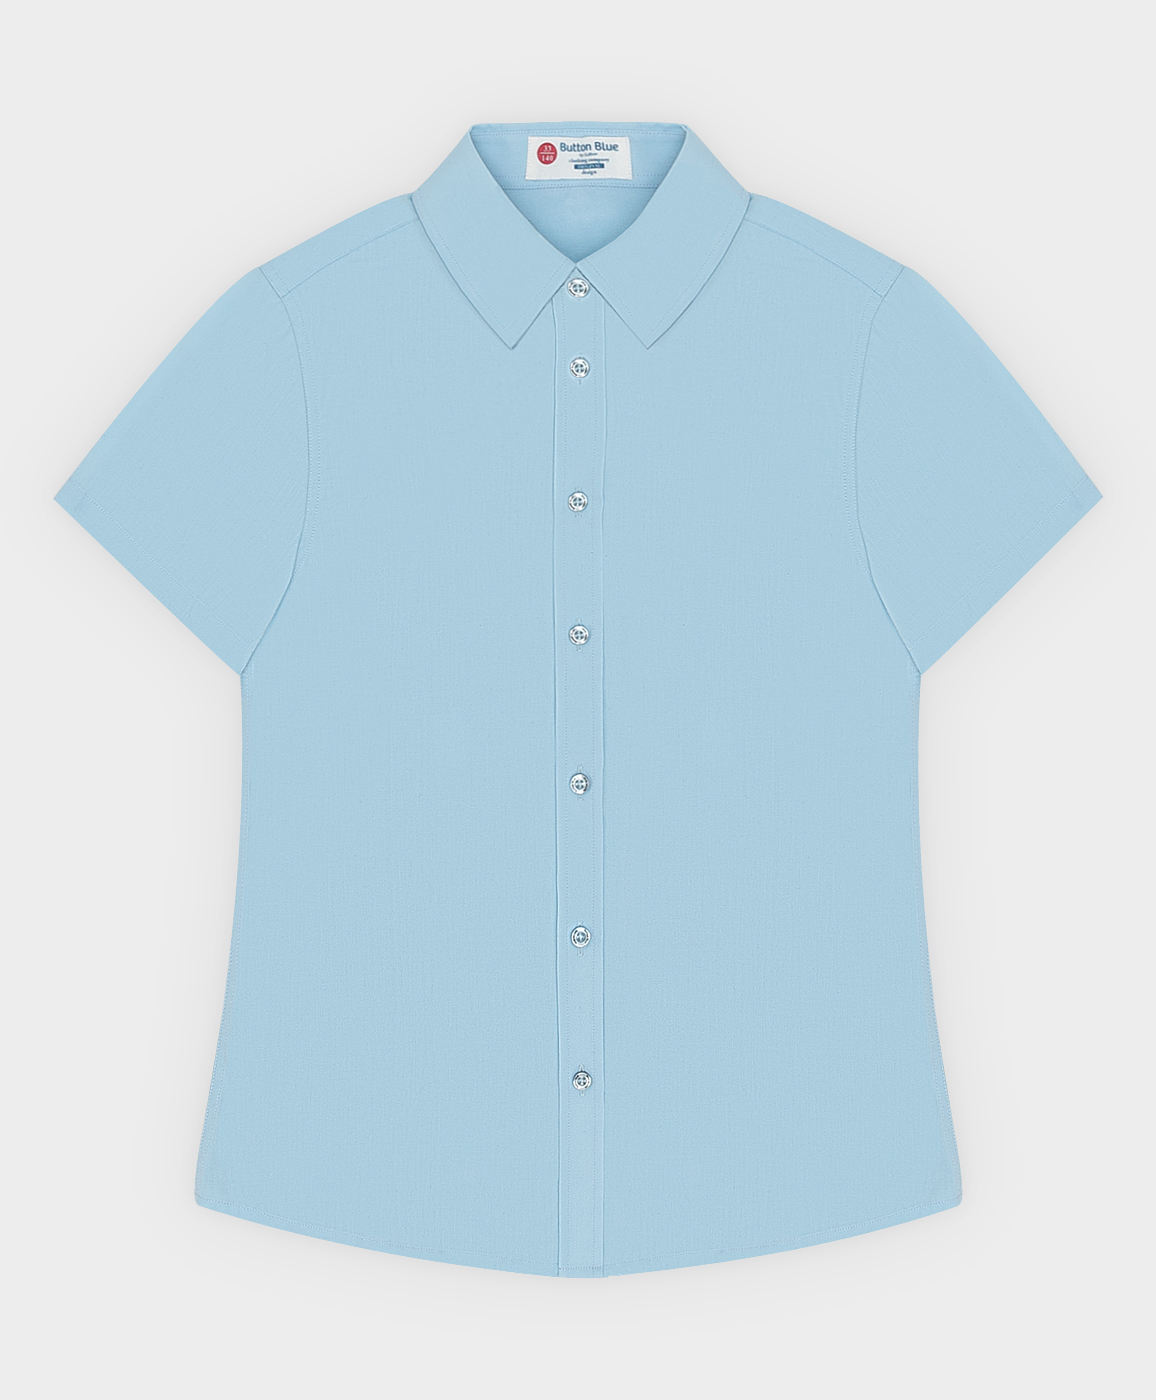 Сорочка классическая с коротким рукавом голубая Button Blue